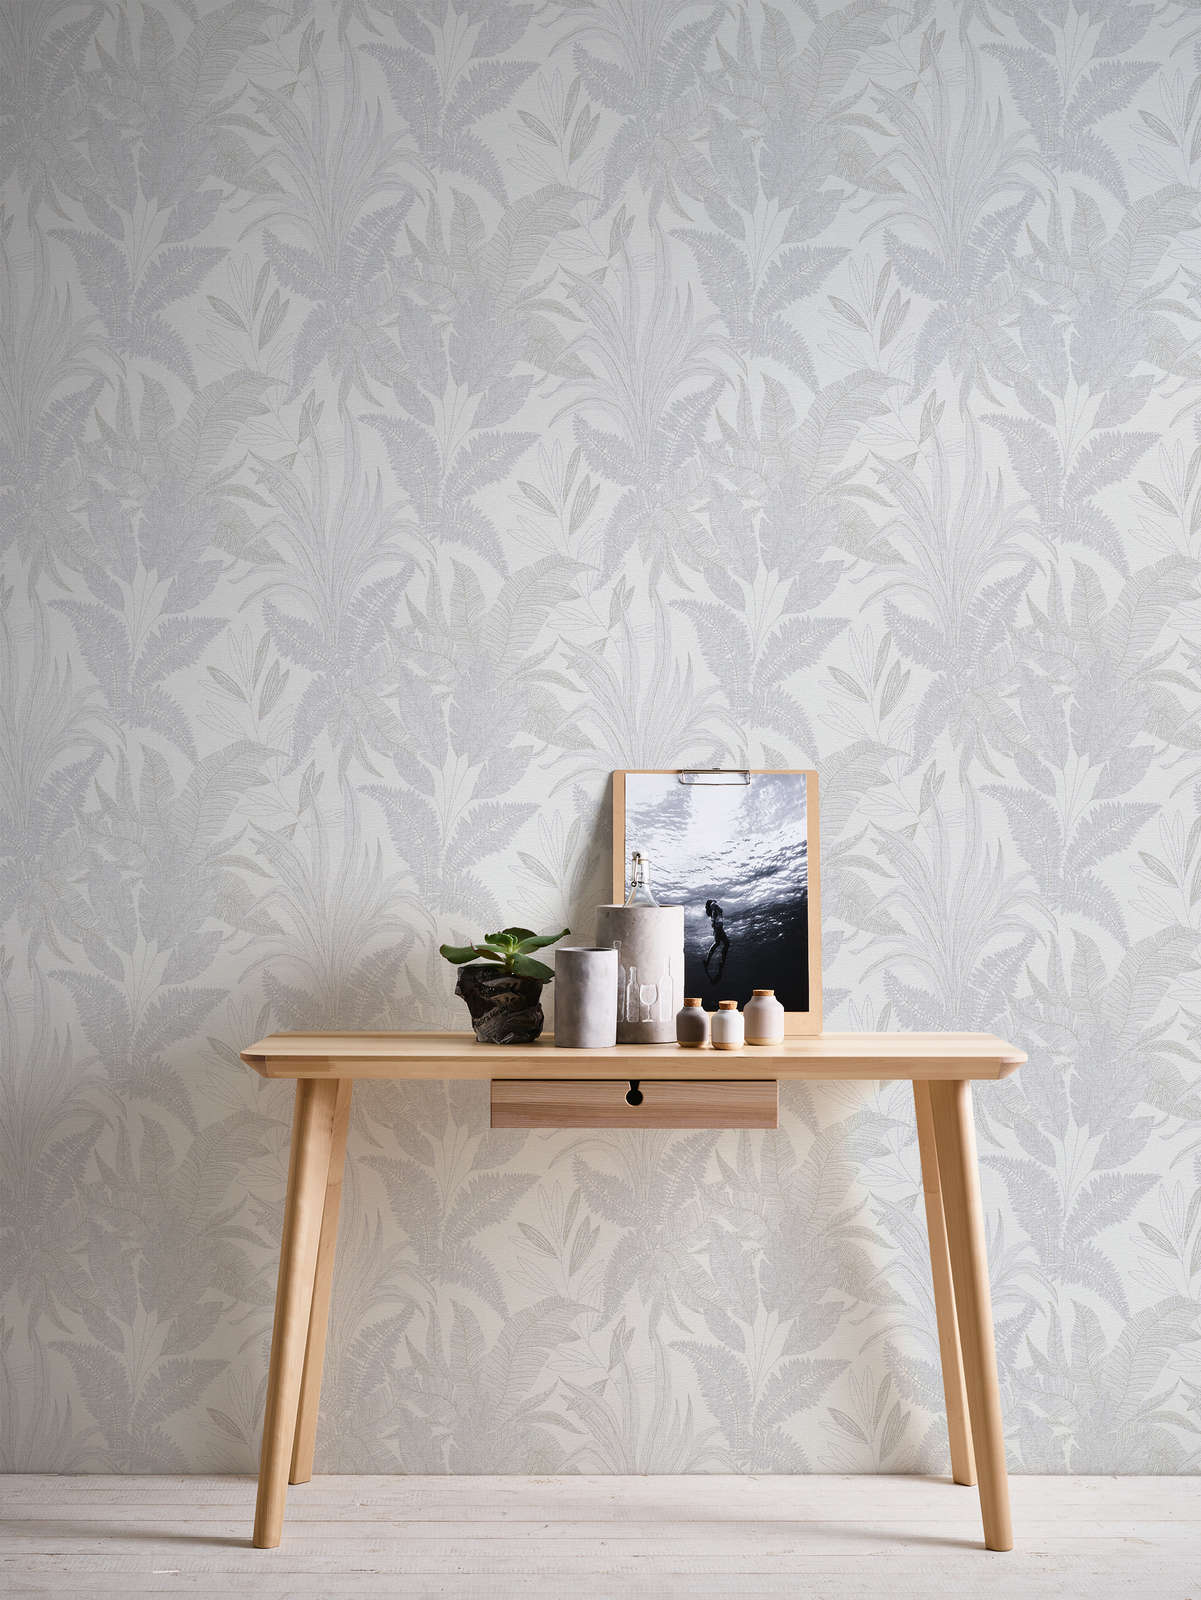             papier peint en papier intissé avec feuilles de jungle - motif légèrement structuré - gris, crème, or
        